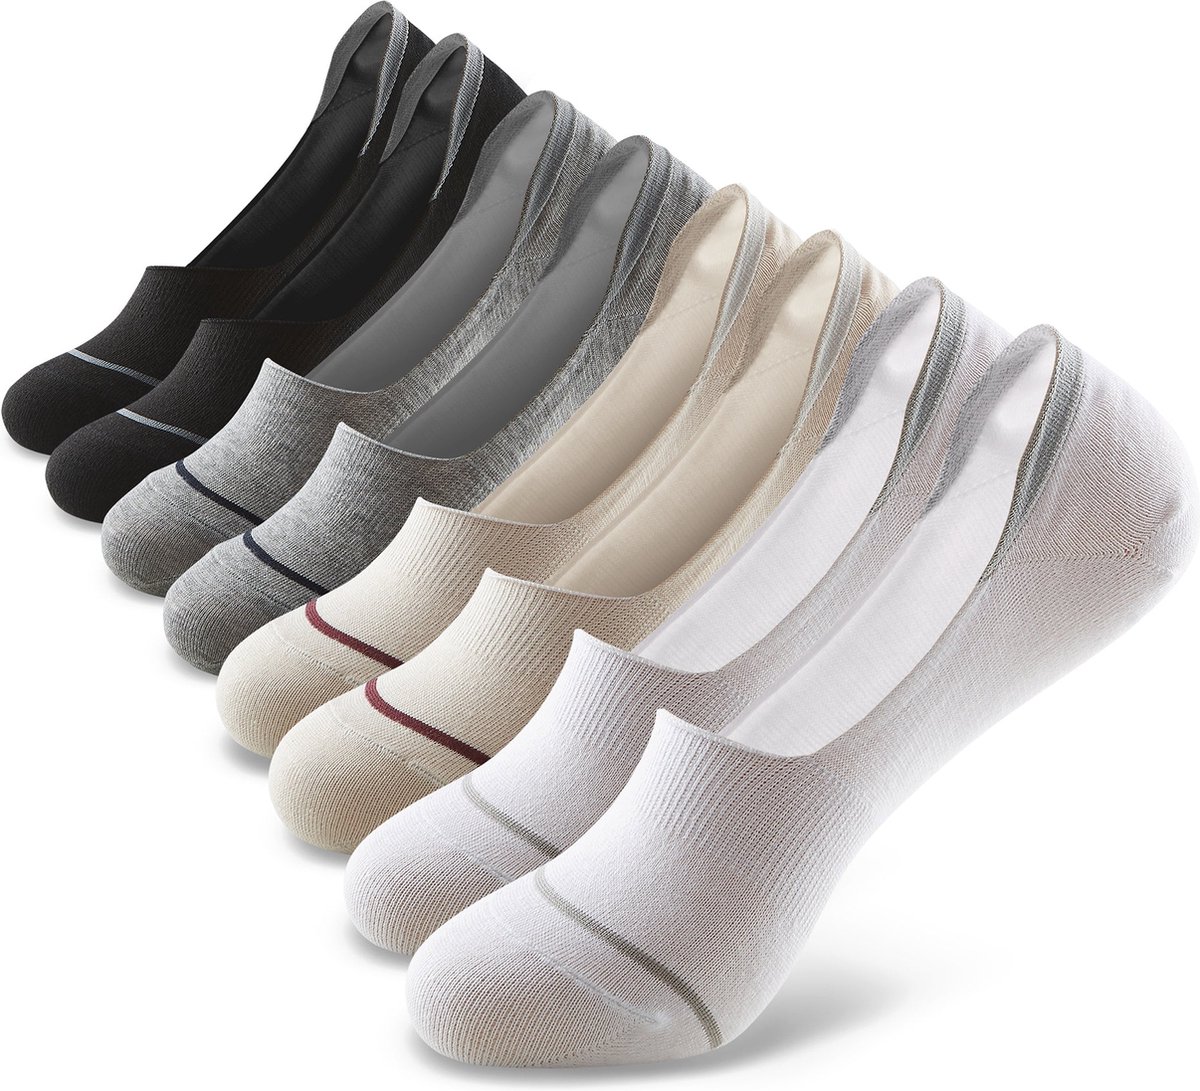 Monfoot - Onzichtbare Lage Sokken met Siliconen Grip in Meerdere Kleuren - Heren, Dames, Unisex - 8 Paar - Wit/Zwart/Beige/Grijs - Elastisch en Ademend